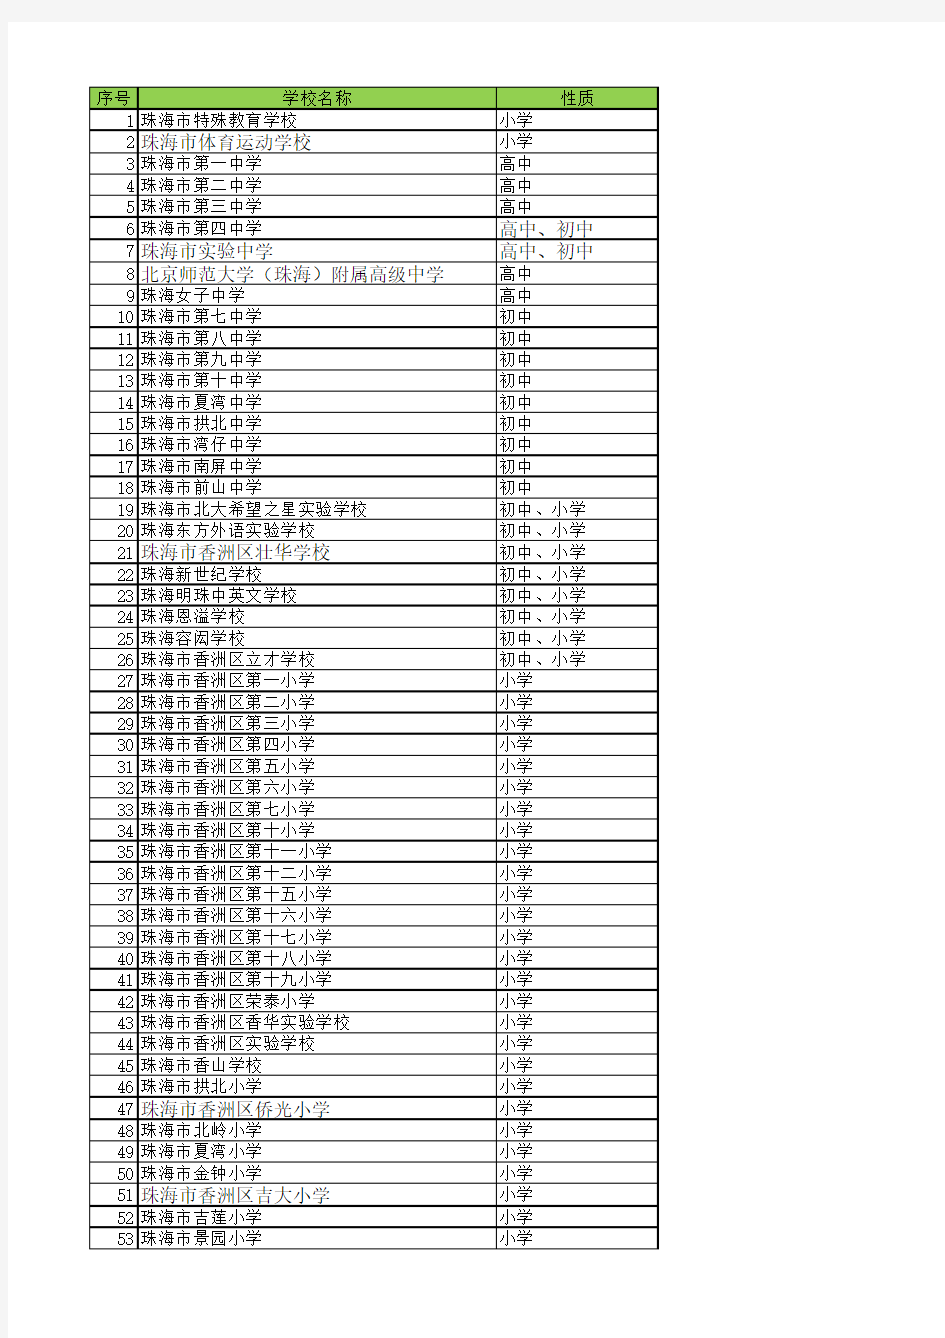 珠海市所有学校清单完整版